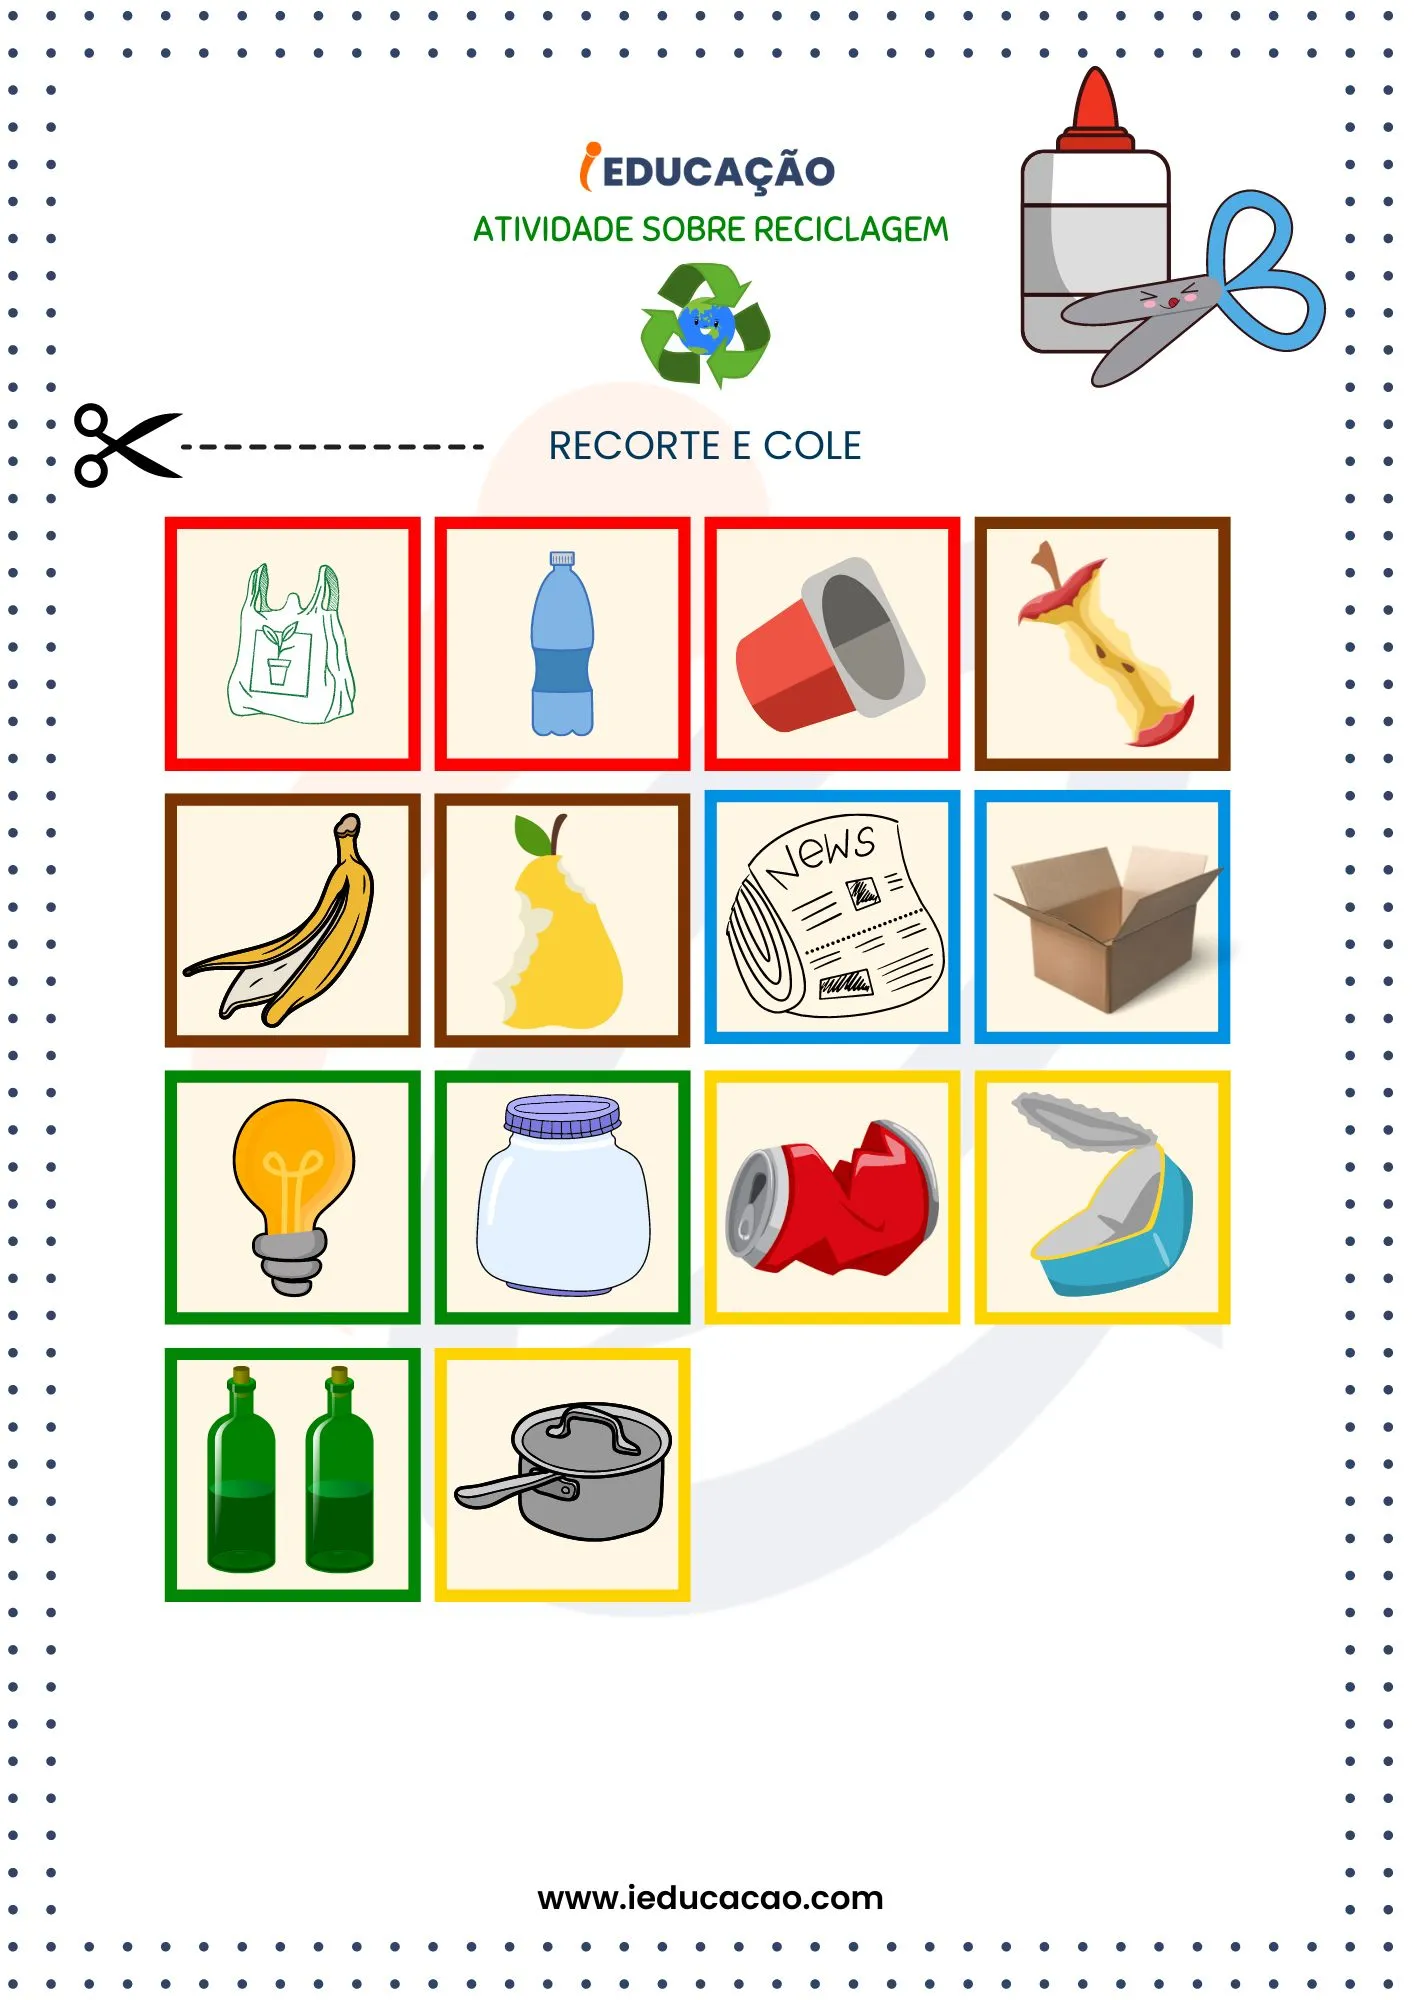 Atividades Sobre Reciclagem na Educação Infantil- Recursos para Colar e Recortar_